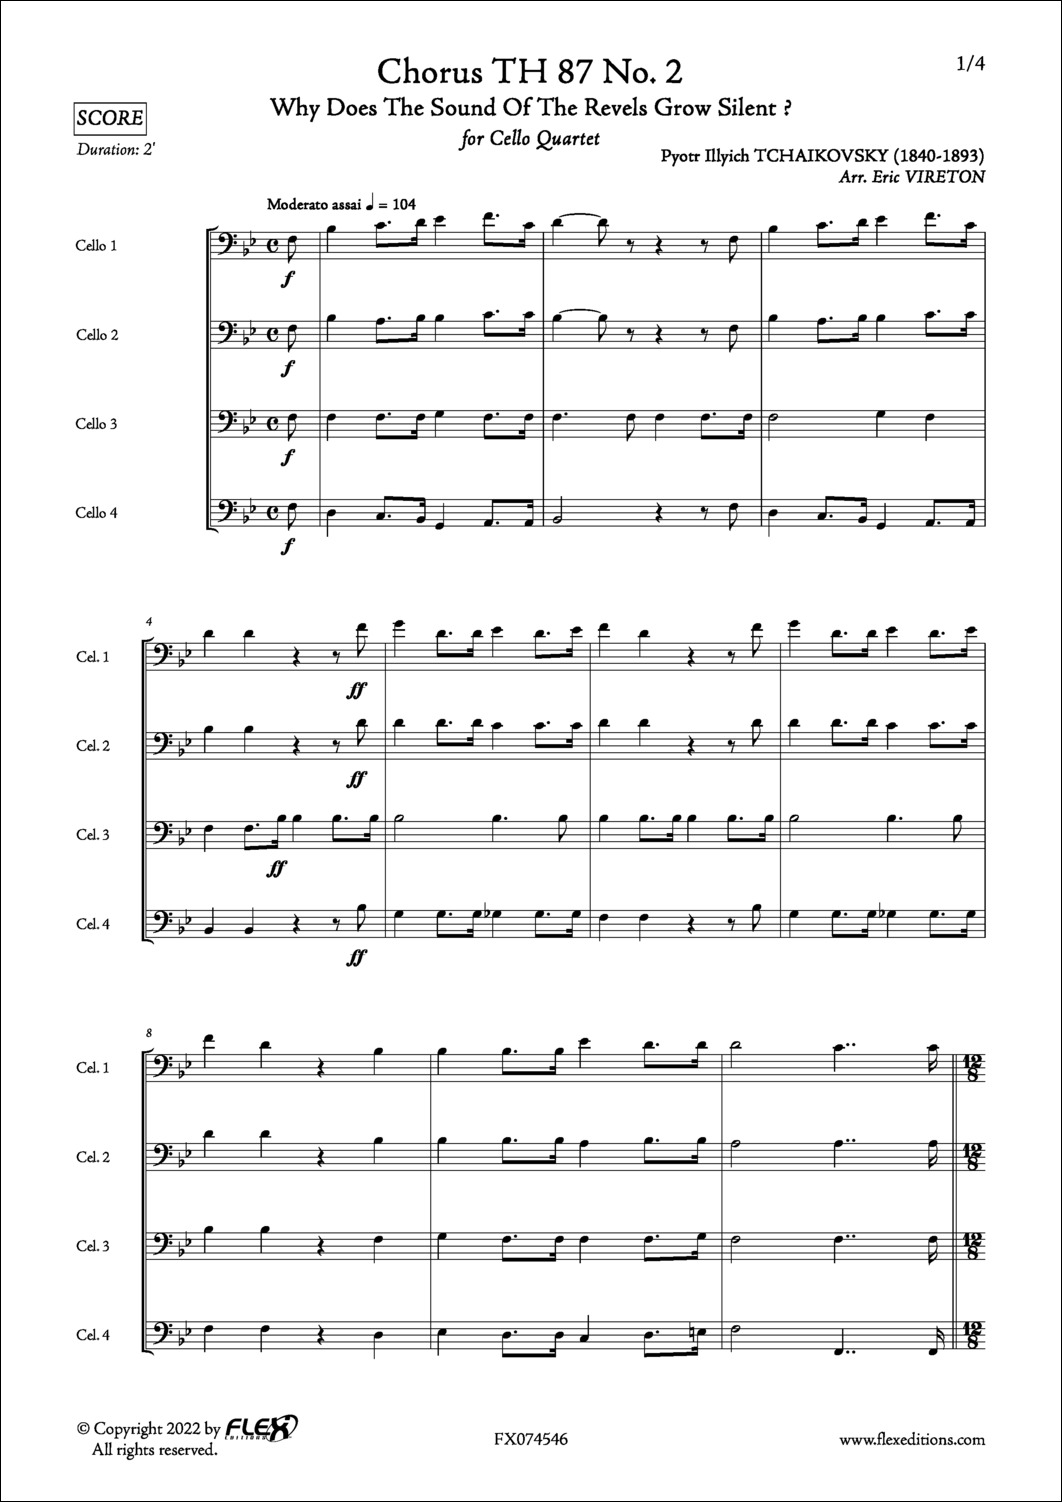 Chorus TH 87 No. 2 - P. I. TCHAIKOVSKY - <font color=#666666>Cello Quartet</font>